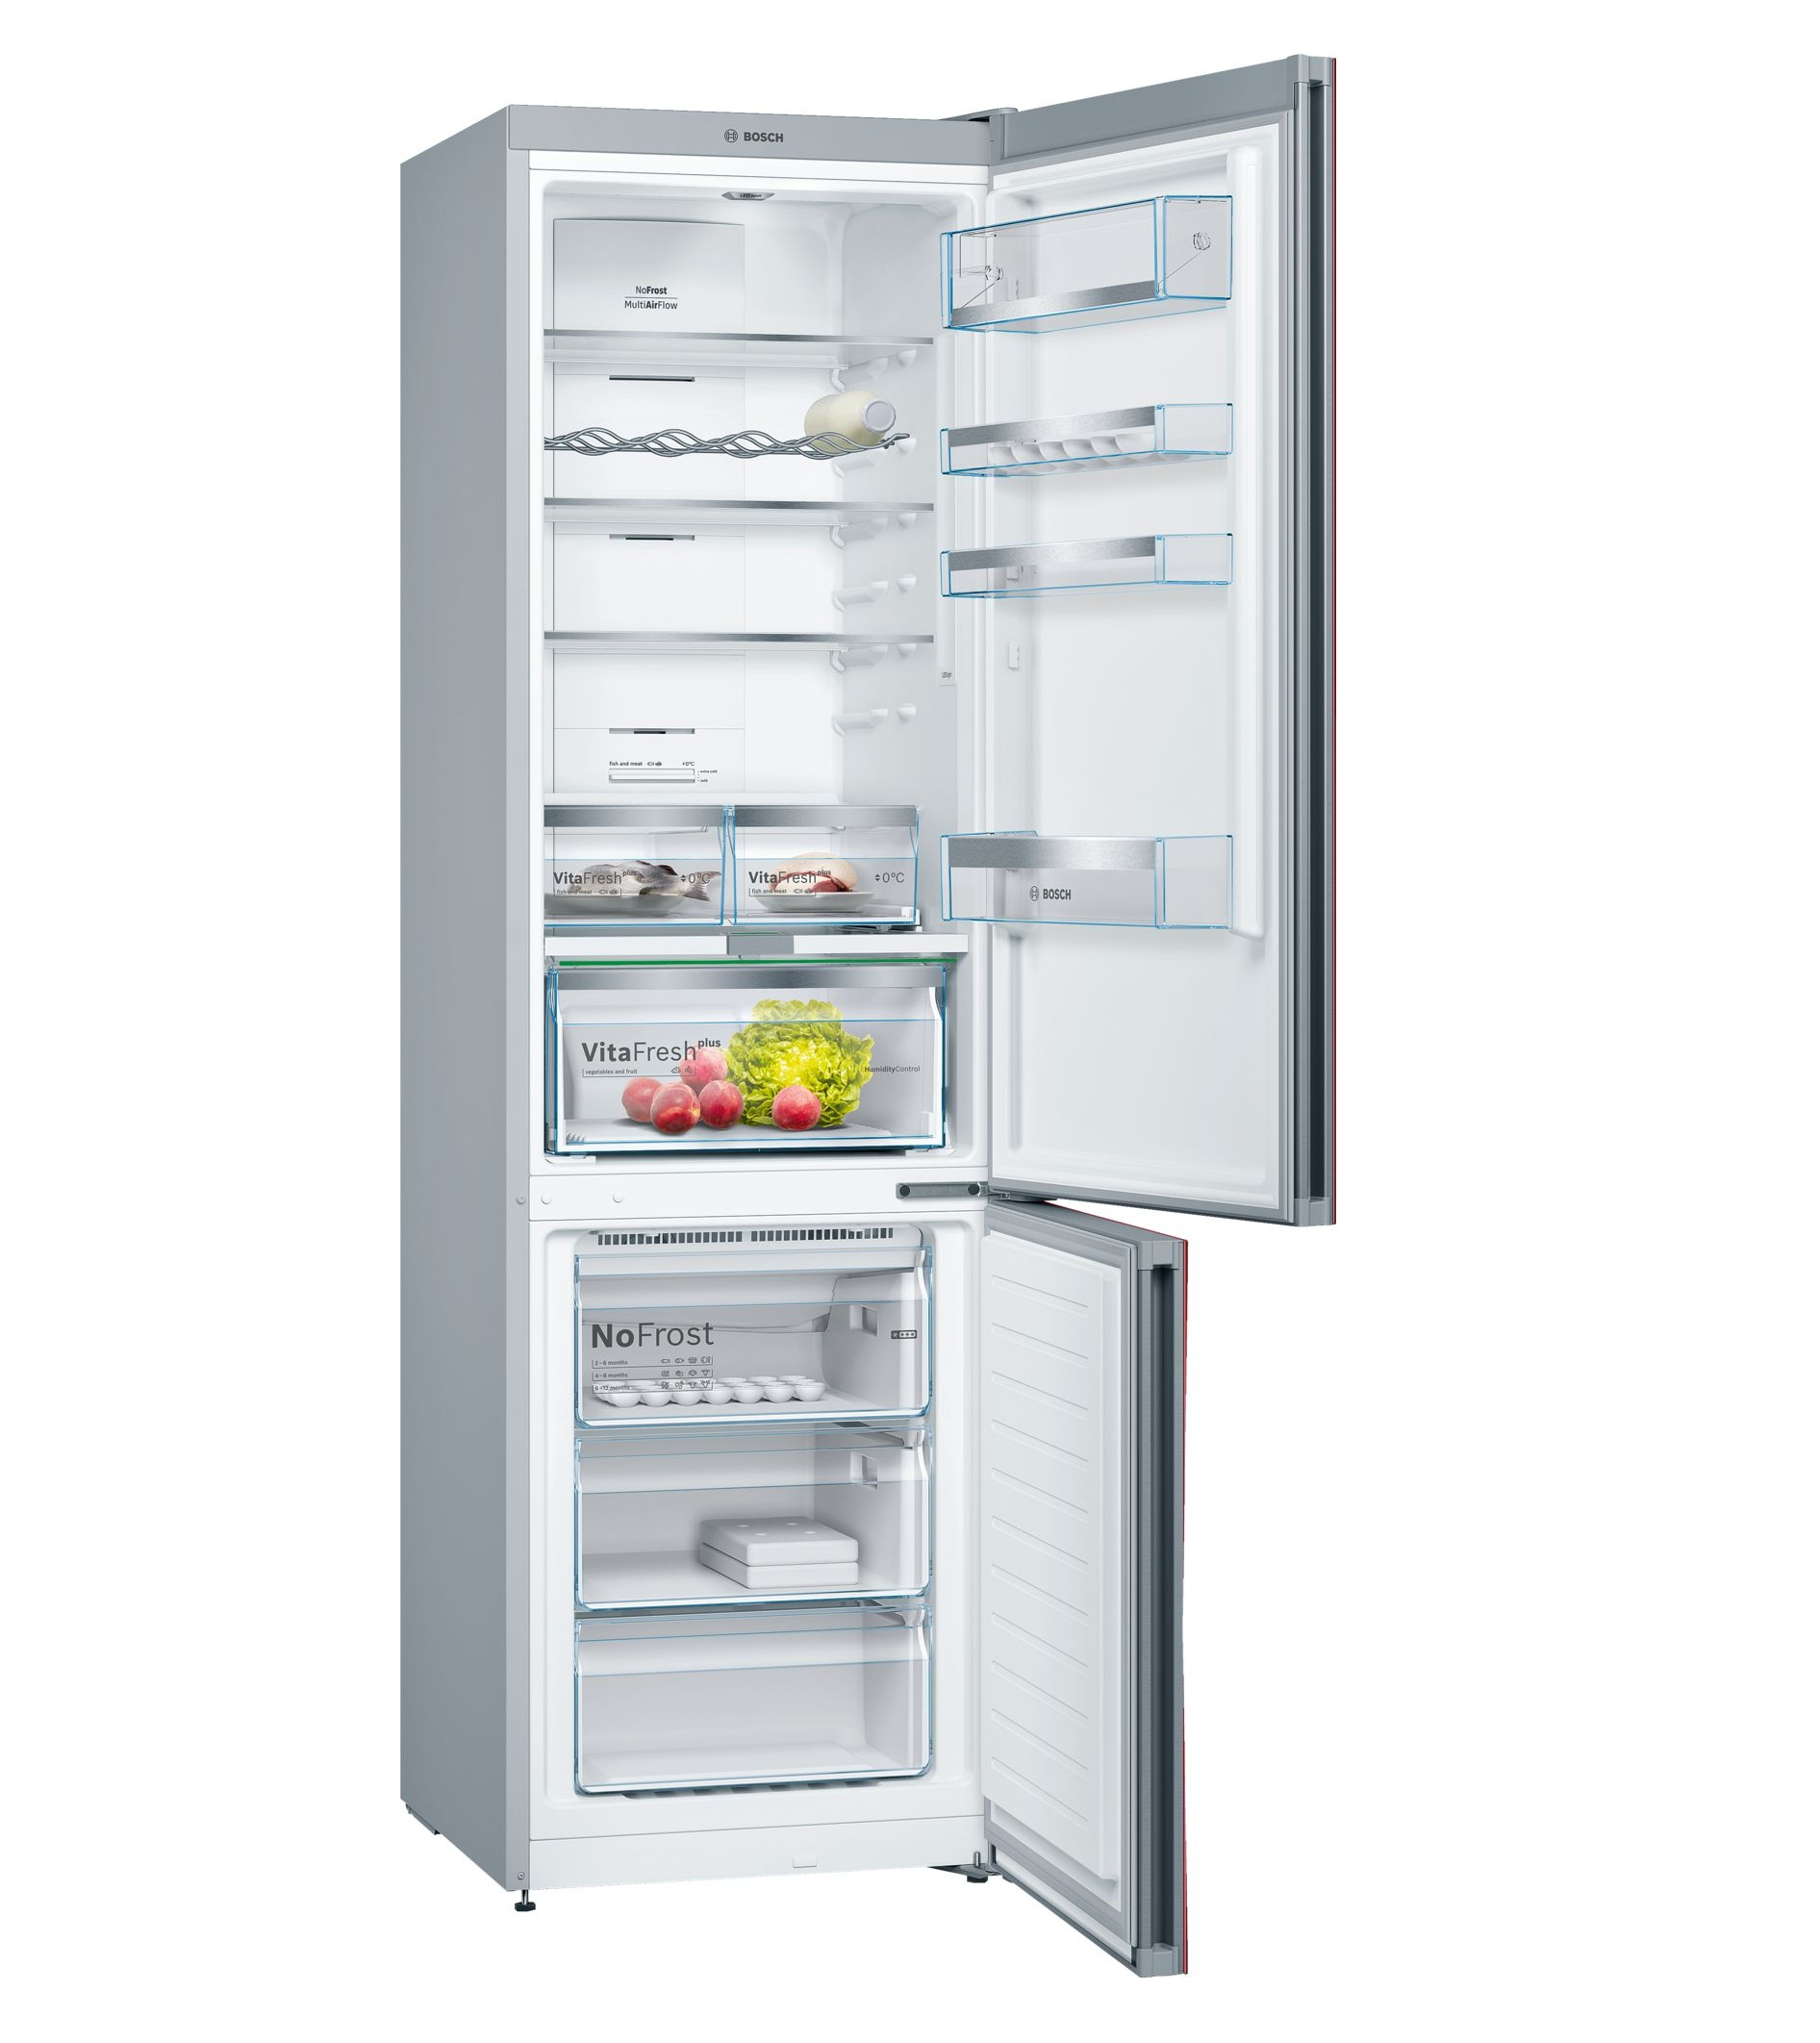 Tủ lạnh Bosch KGN39LR35 được thiết kế với nhiều ngăn cho nhiều mục đích sử dụng khác nhau